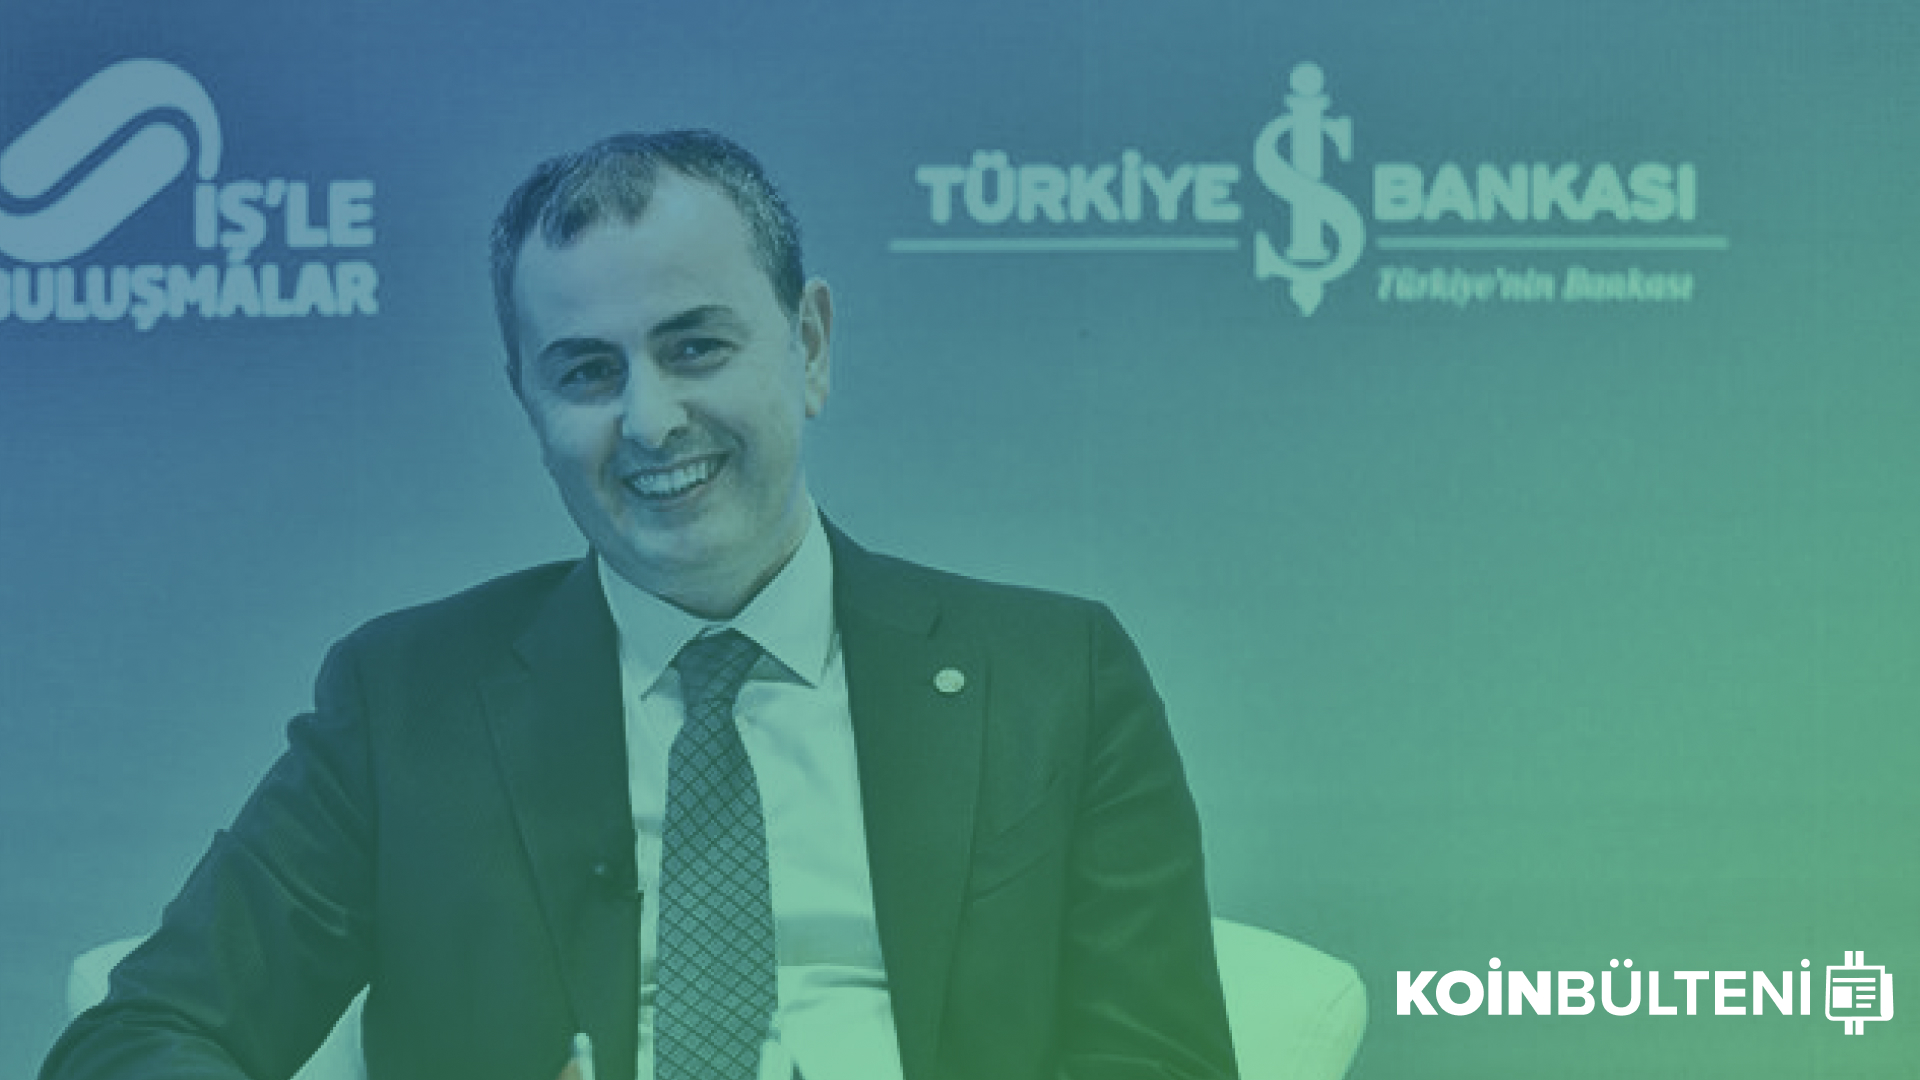 turkiye-is-bankasi-bitcoin-btc-coin-kripto-para-koin-regulasyon-dijital-yasa (1)